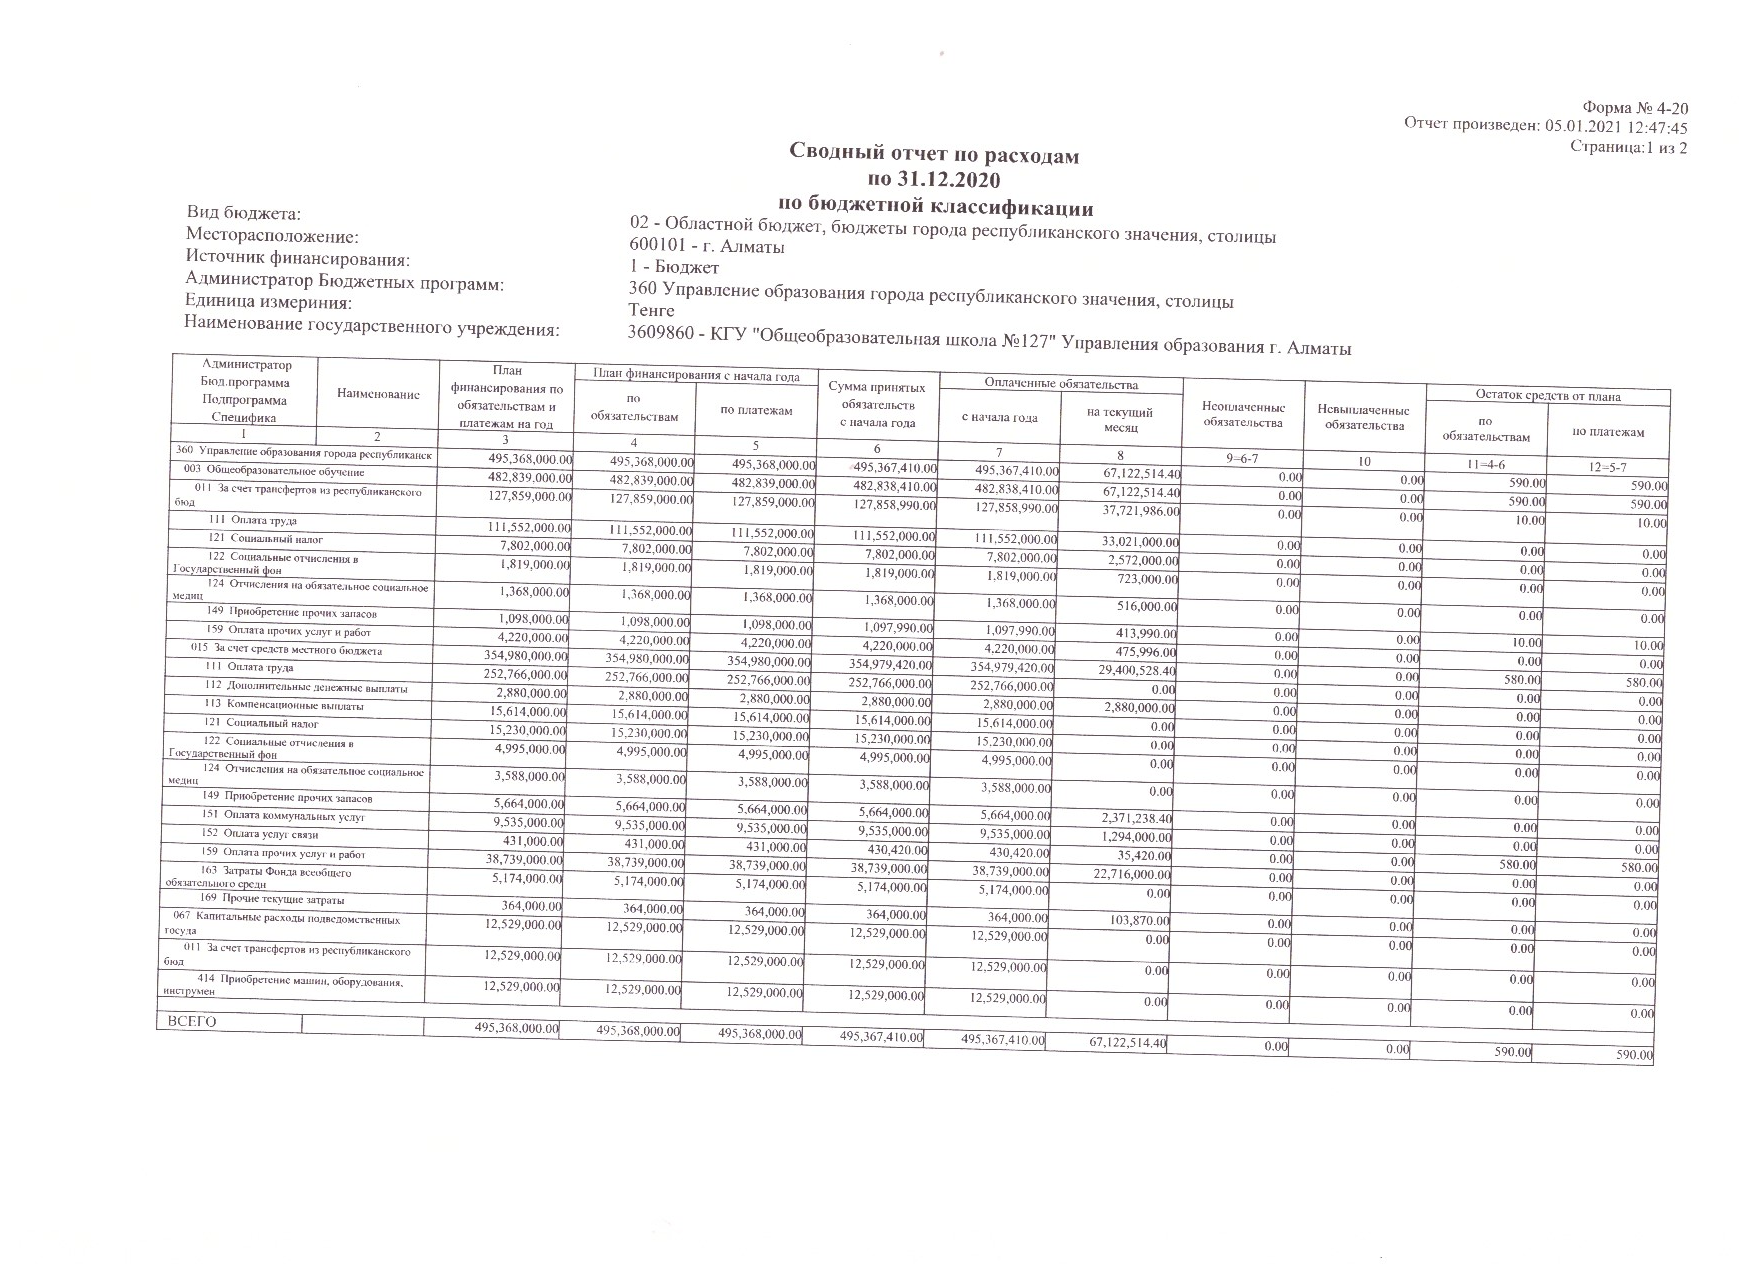 Сводный отчет по расходам по 31.12.2020г . по бюджетной классификации